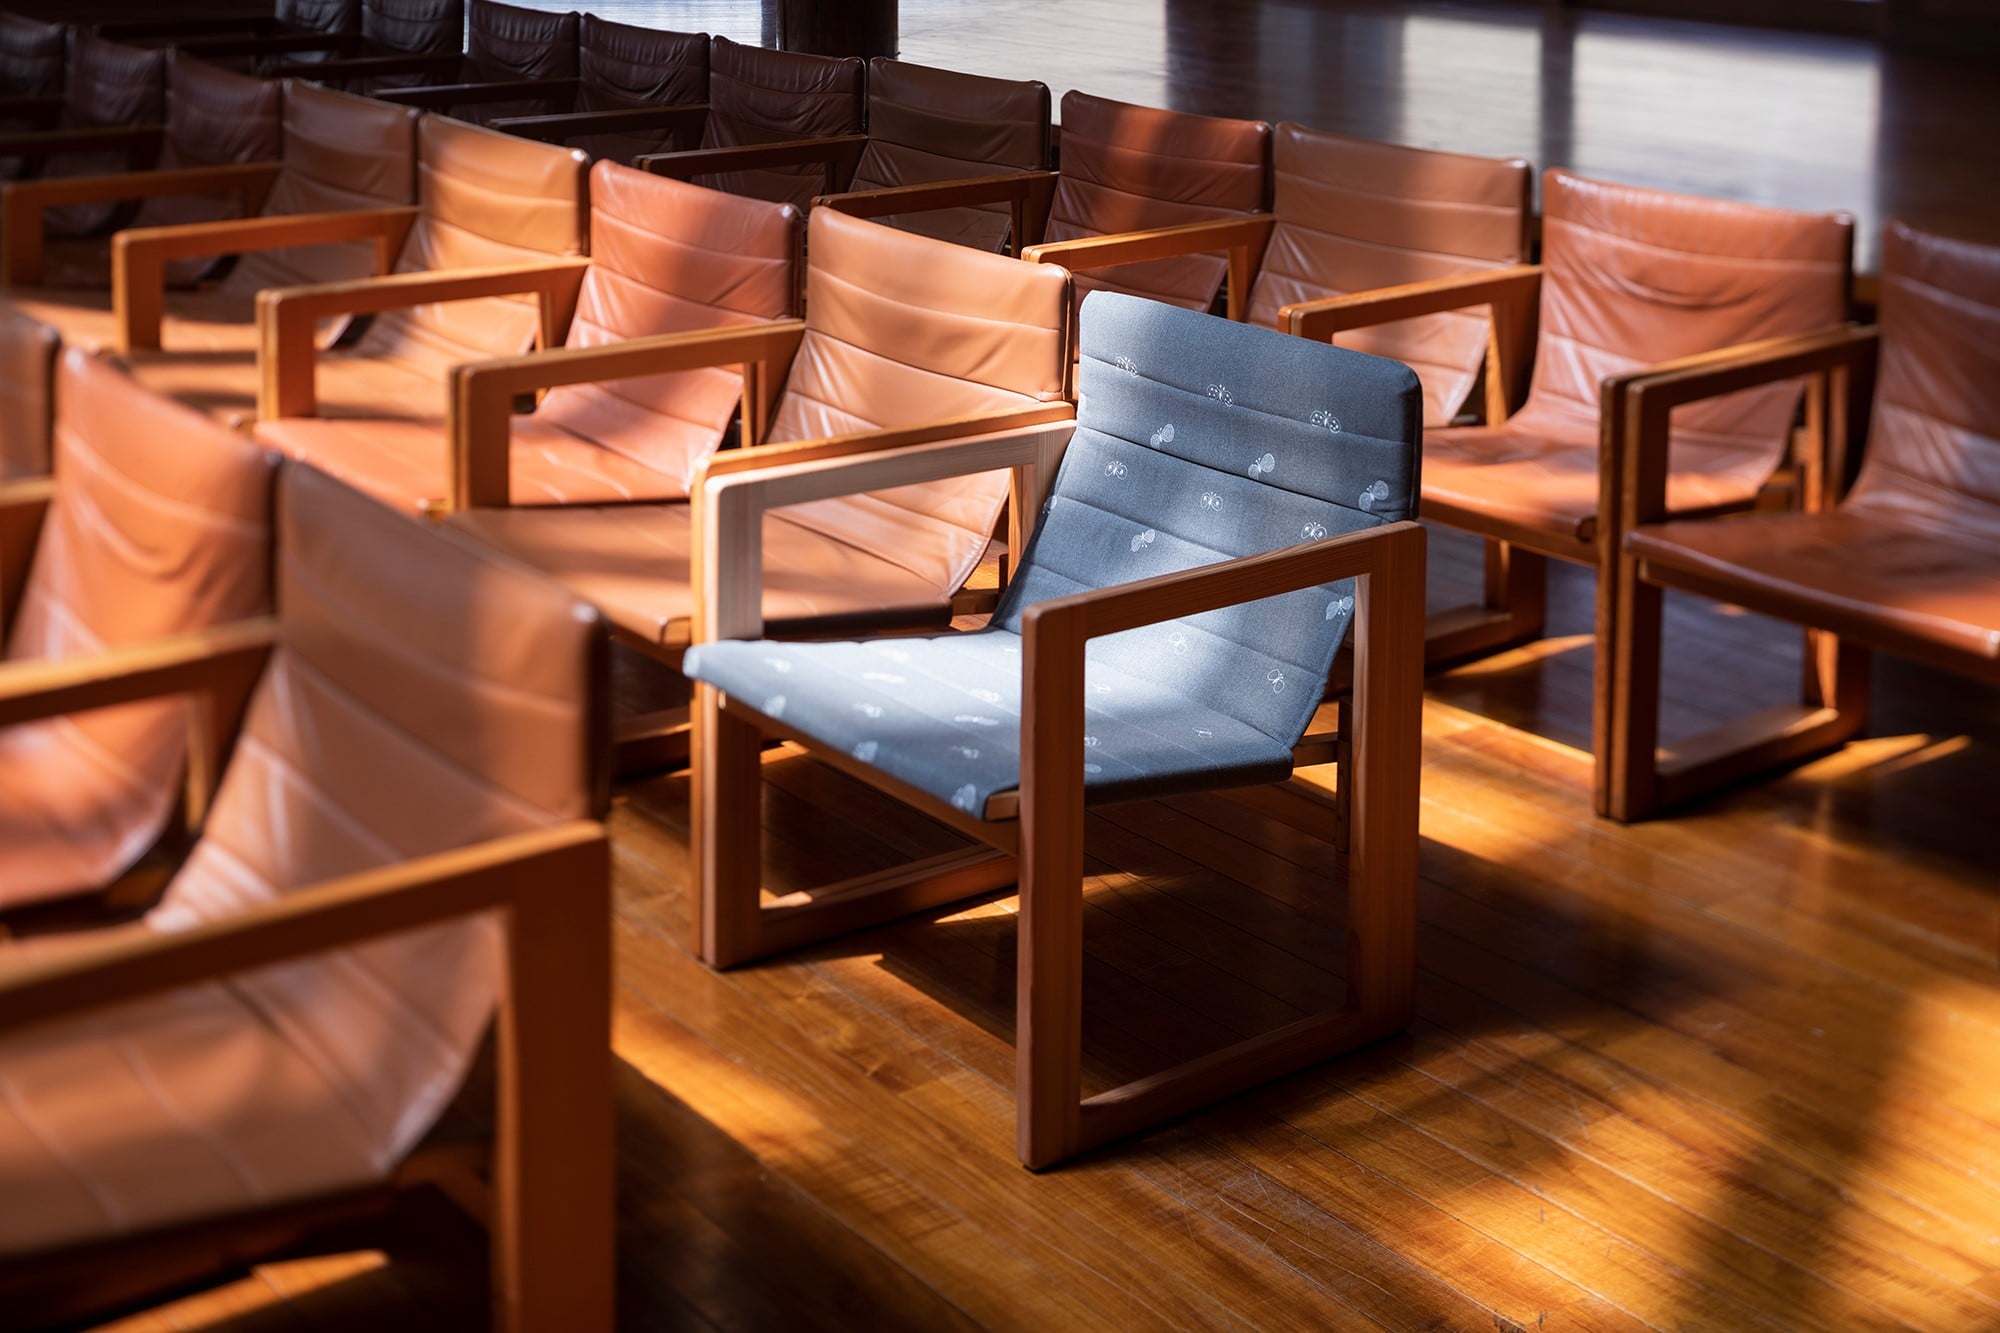 1988年に完成した八ヶ岳高原音楽堂（長野県）の客席椅子として製作された「たためる椅子」。吉村順三、中村好文、丸谷芳正によるデザインのイスにミナ ペルホネンの生地が寄り添って、名作の椅子に新たな魅力が加わった。八ヶ岳高原ロッジでの販売は2019年12月31日に終了。 八ヶ岳高原ロッジ・八ヶ岳高原音楽堂 https://www.yatsugatake.co.jp/ Photography by ooki jingu